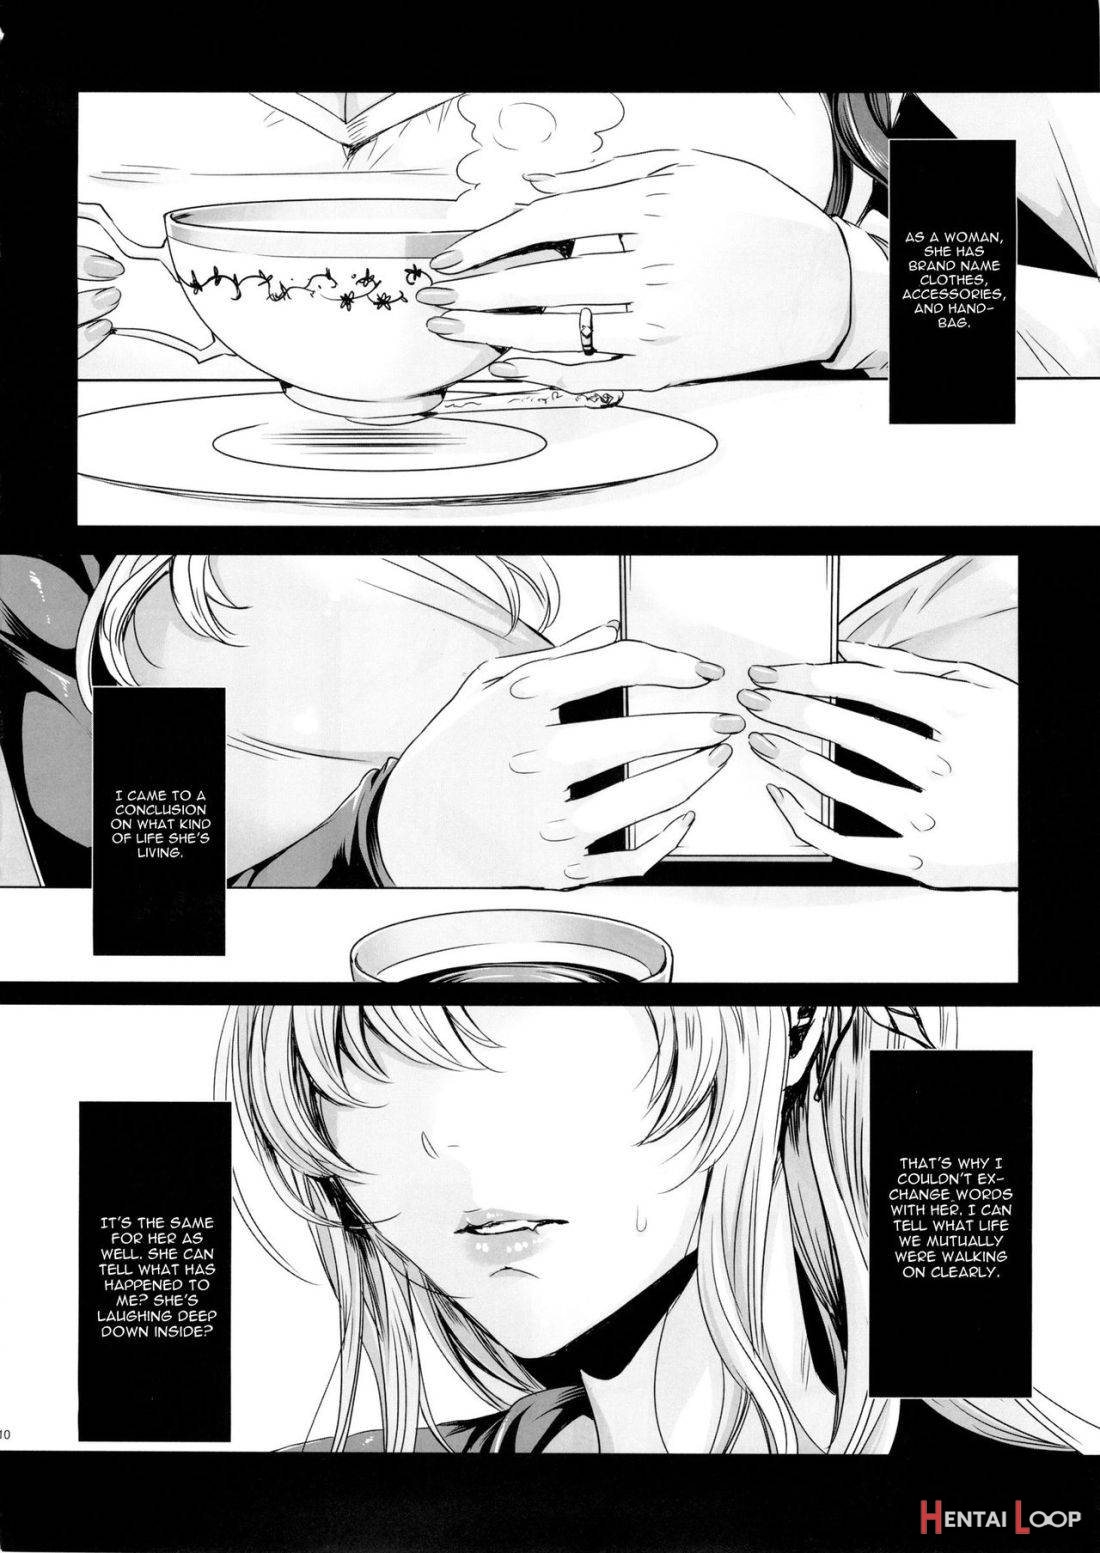 Sena 29sai Koibito Ga Inai 2 page 8